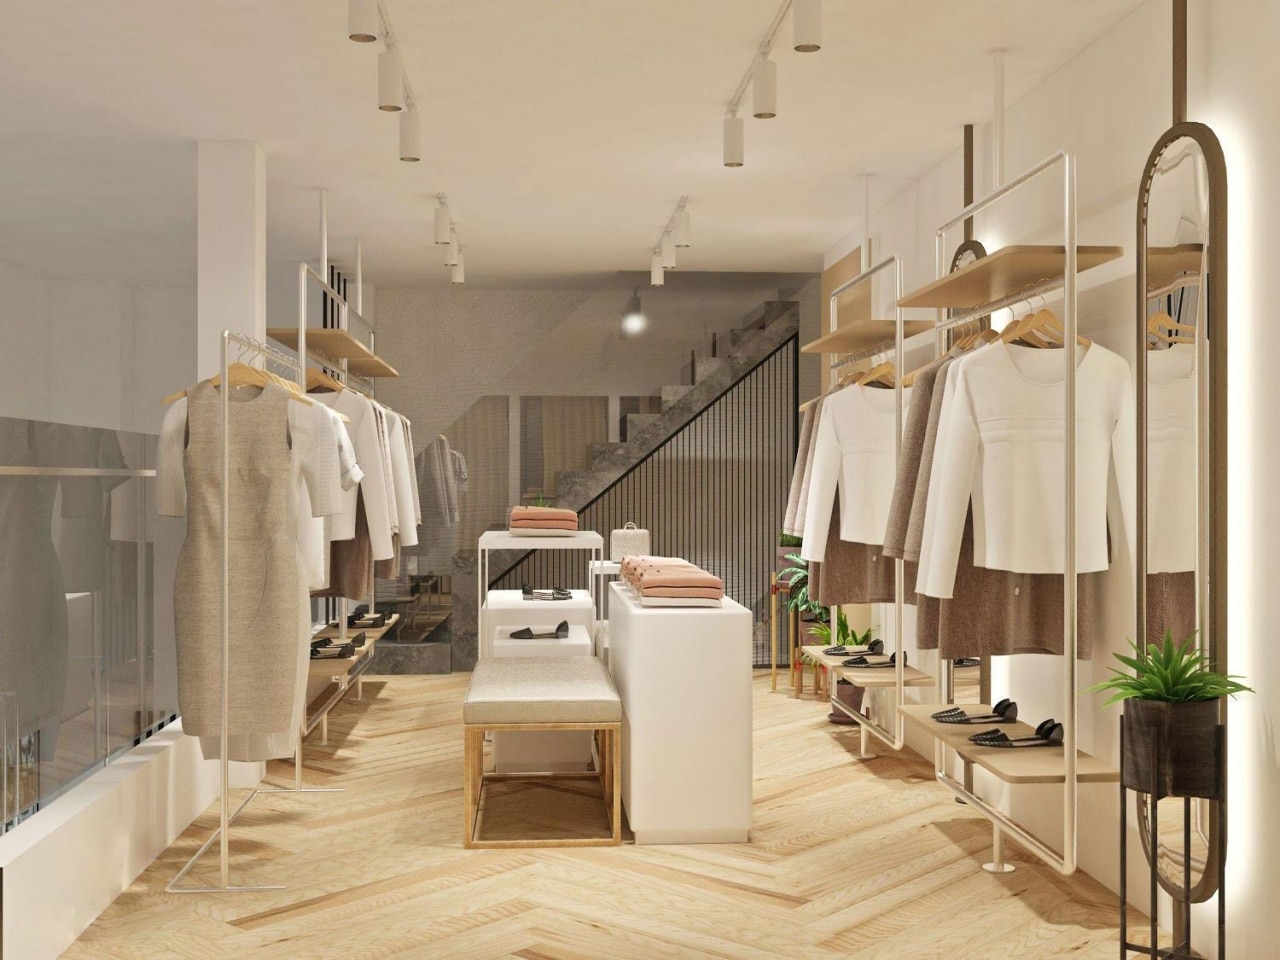 Luca Group – Thiết kế thi công shop quần áo cửa hàng thời trang tại Vinh Hà Tĩnh